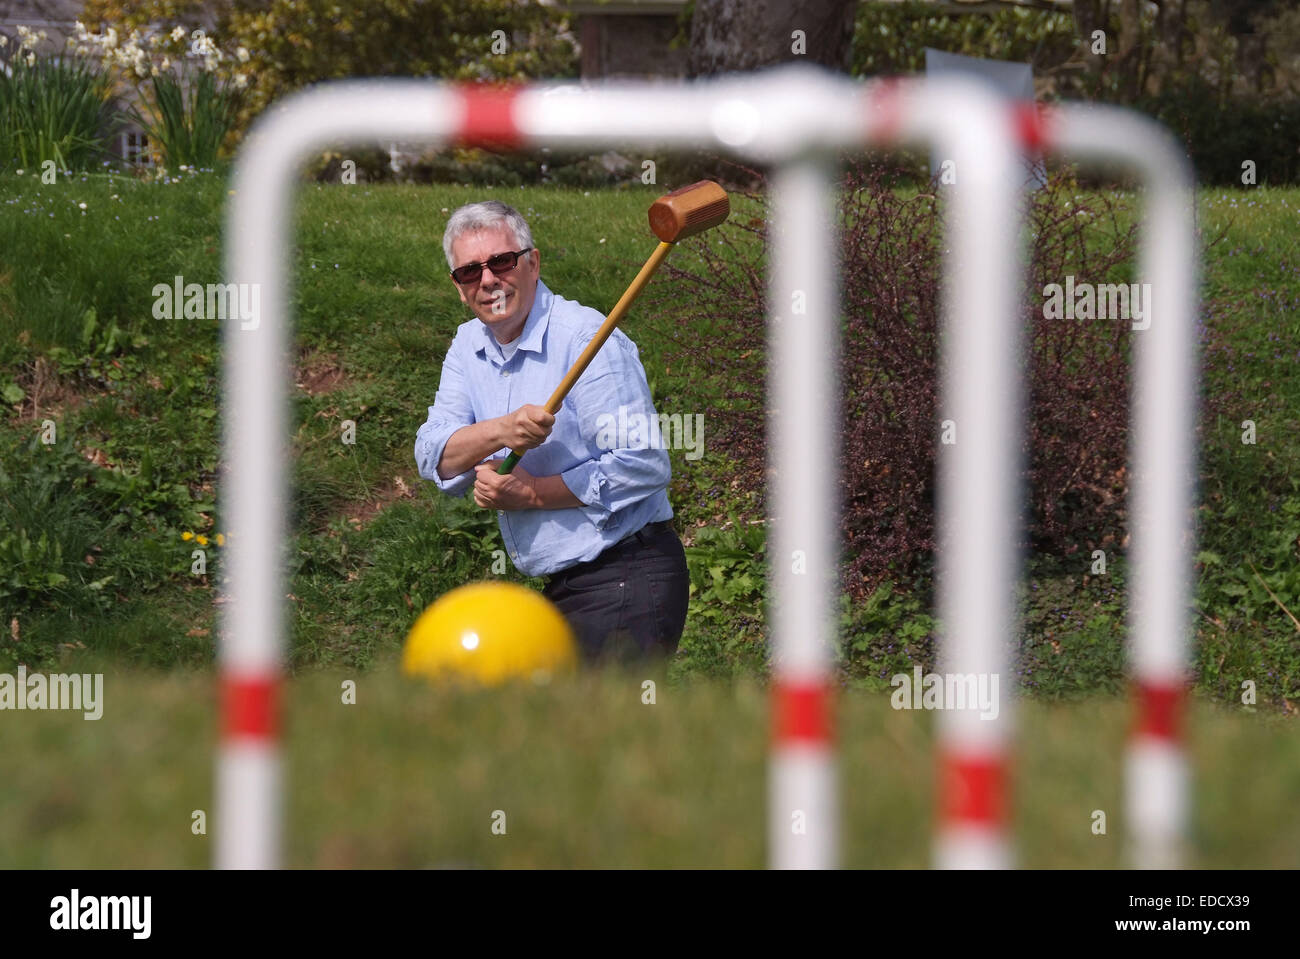 Le nouveau jeu de Crolf, qui est un amalgame de croquet et golf, joué par son inventeur Robbie Richardson (rose et bleu en haut) Banque D'Images